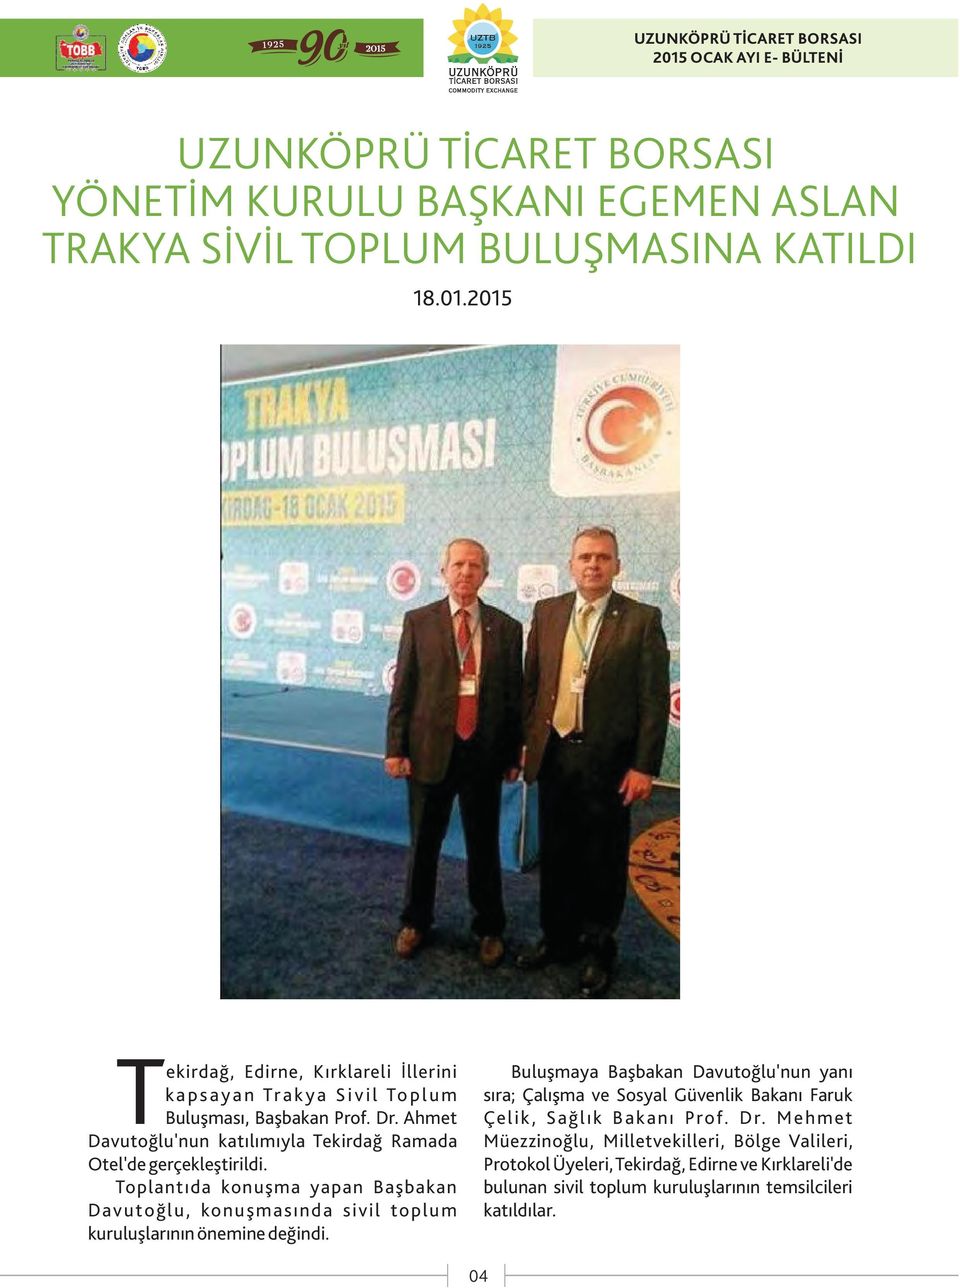 Ahmet Davutoğlu'nun katılımıyla Tekirdağ Ramada Otel'de gerçekleştirildi.